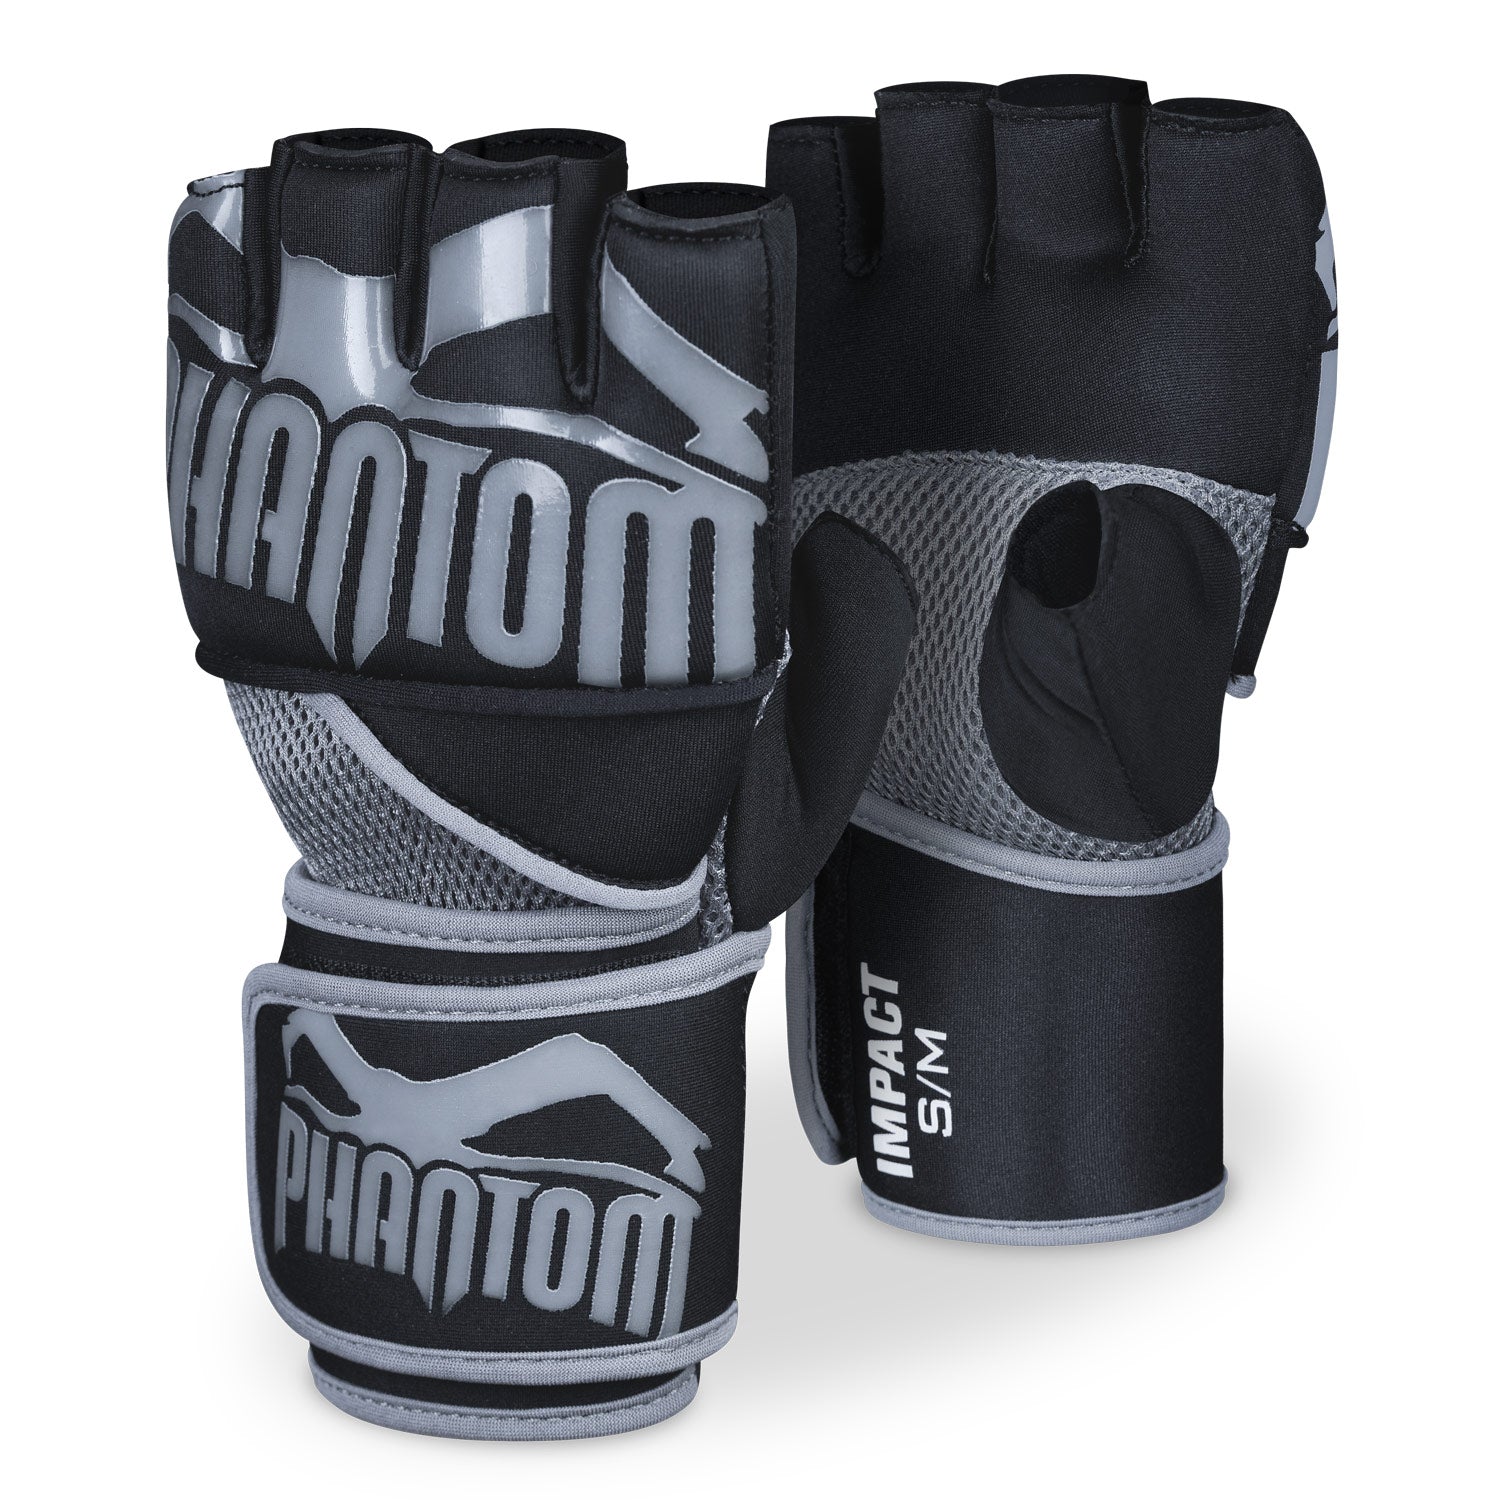 Die Phantom Impact Gel Neopren Handschuhe für dein Kampfsporttraining.